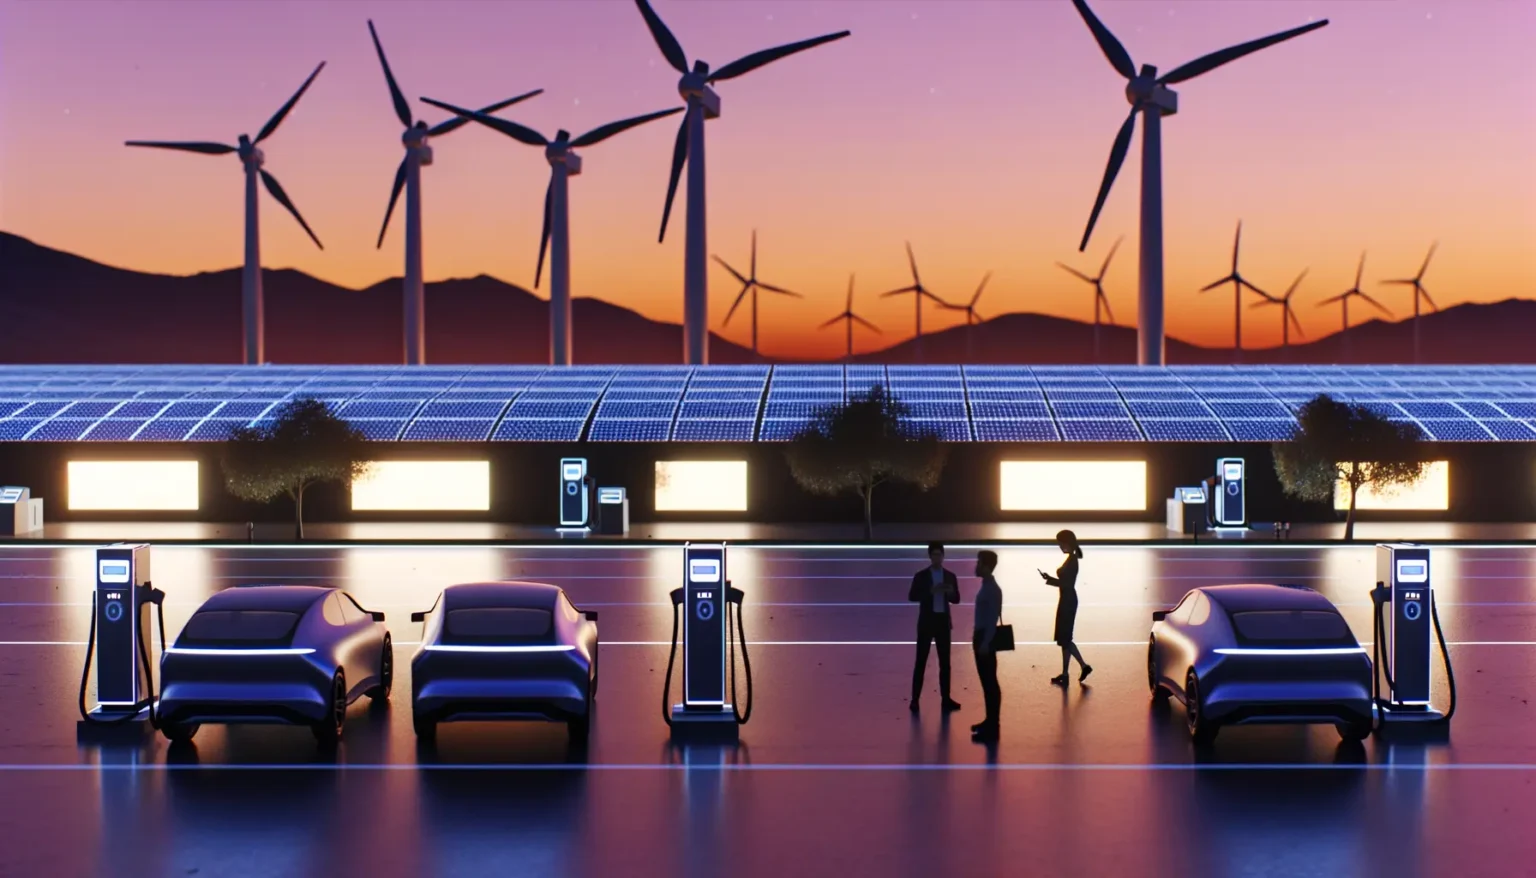 Ein futuristisches Ladeszenario mit Elektroautos an Ladestationen vor einer Kulisse von Windkrafträdern und Solarpaneelen während eines Sonnenuntergangs, wobei Silhouetten von Personen zwischen den Autos interagieren.